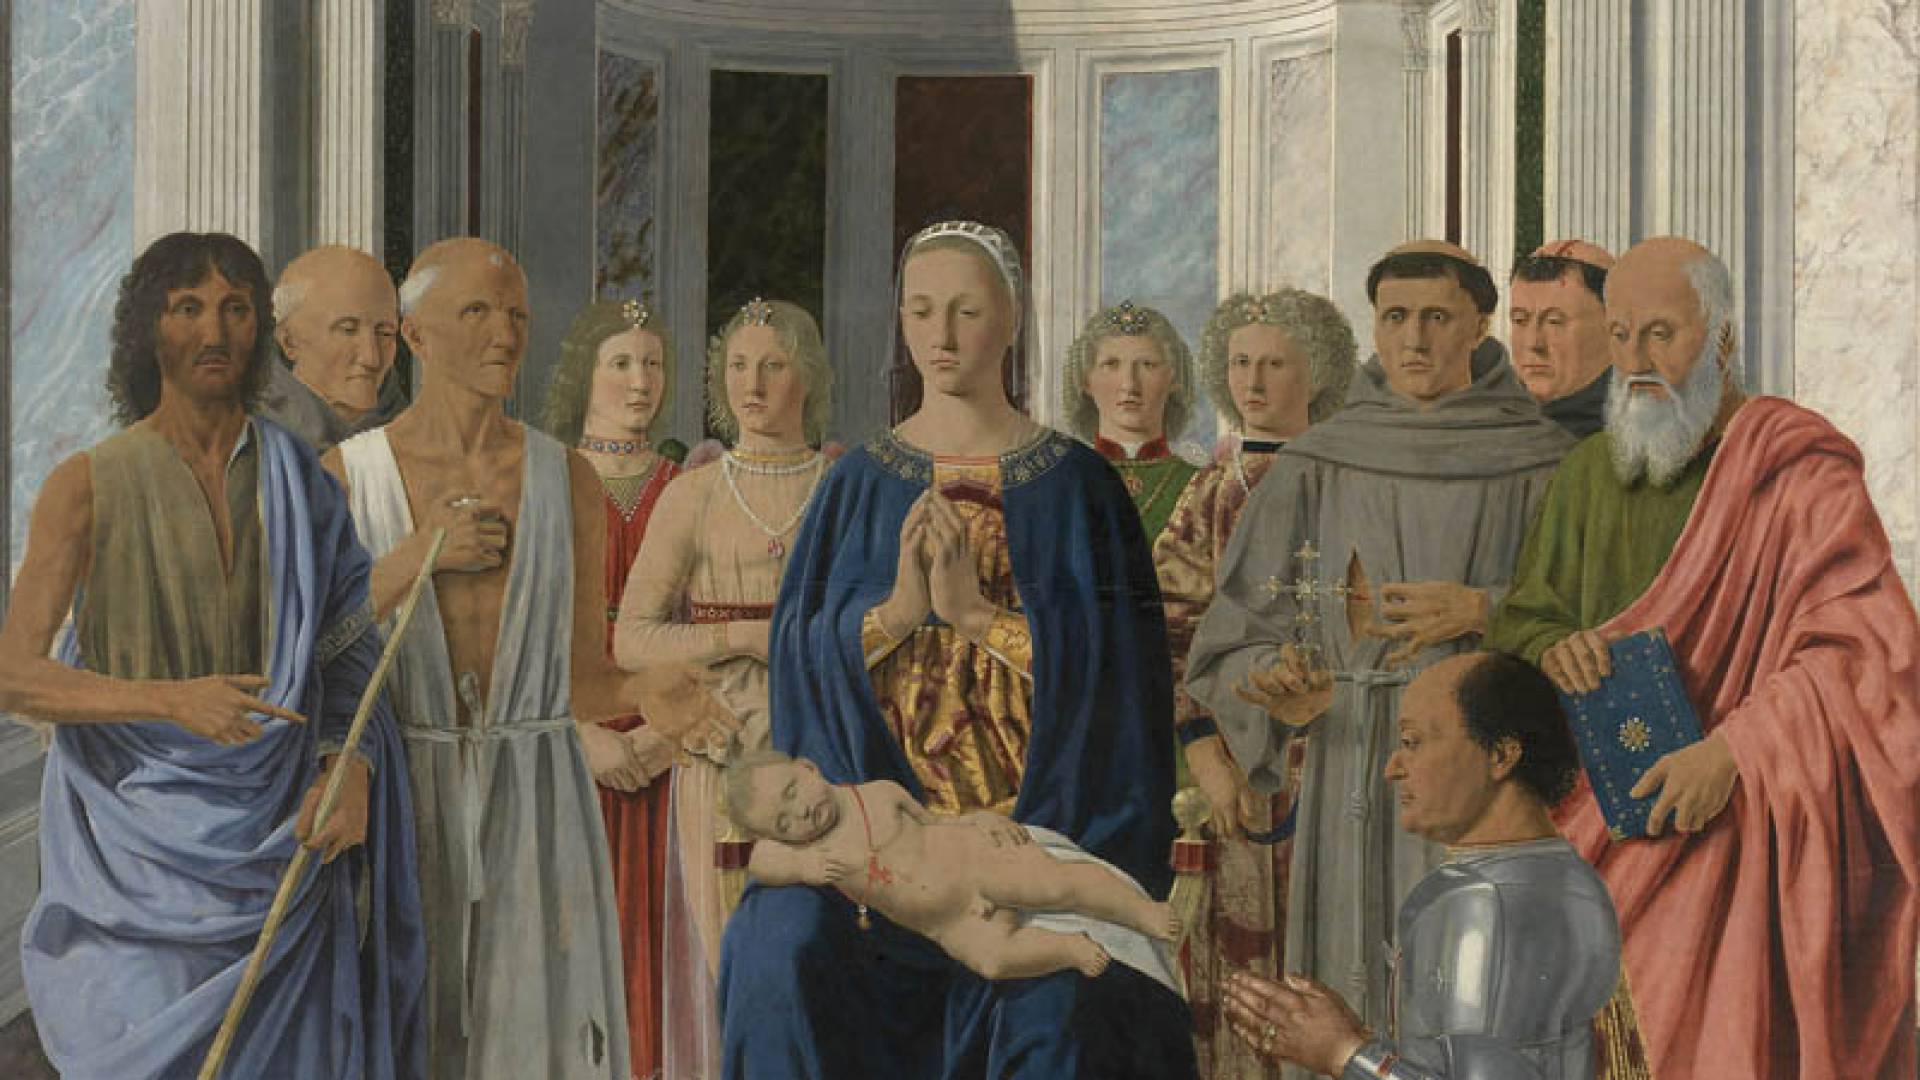 BRERA PINACOTECA, Piero Della Francesca - Pala Montefeltro 